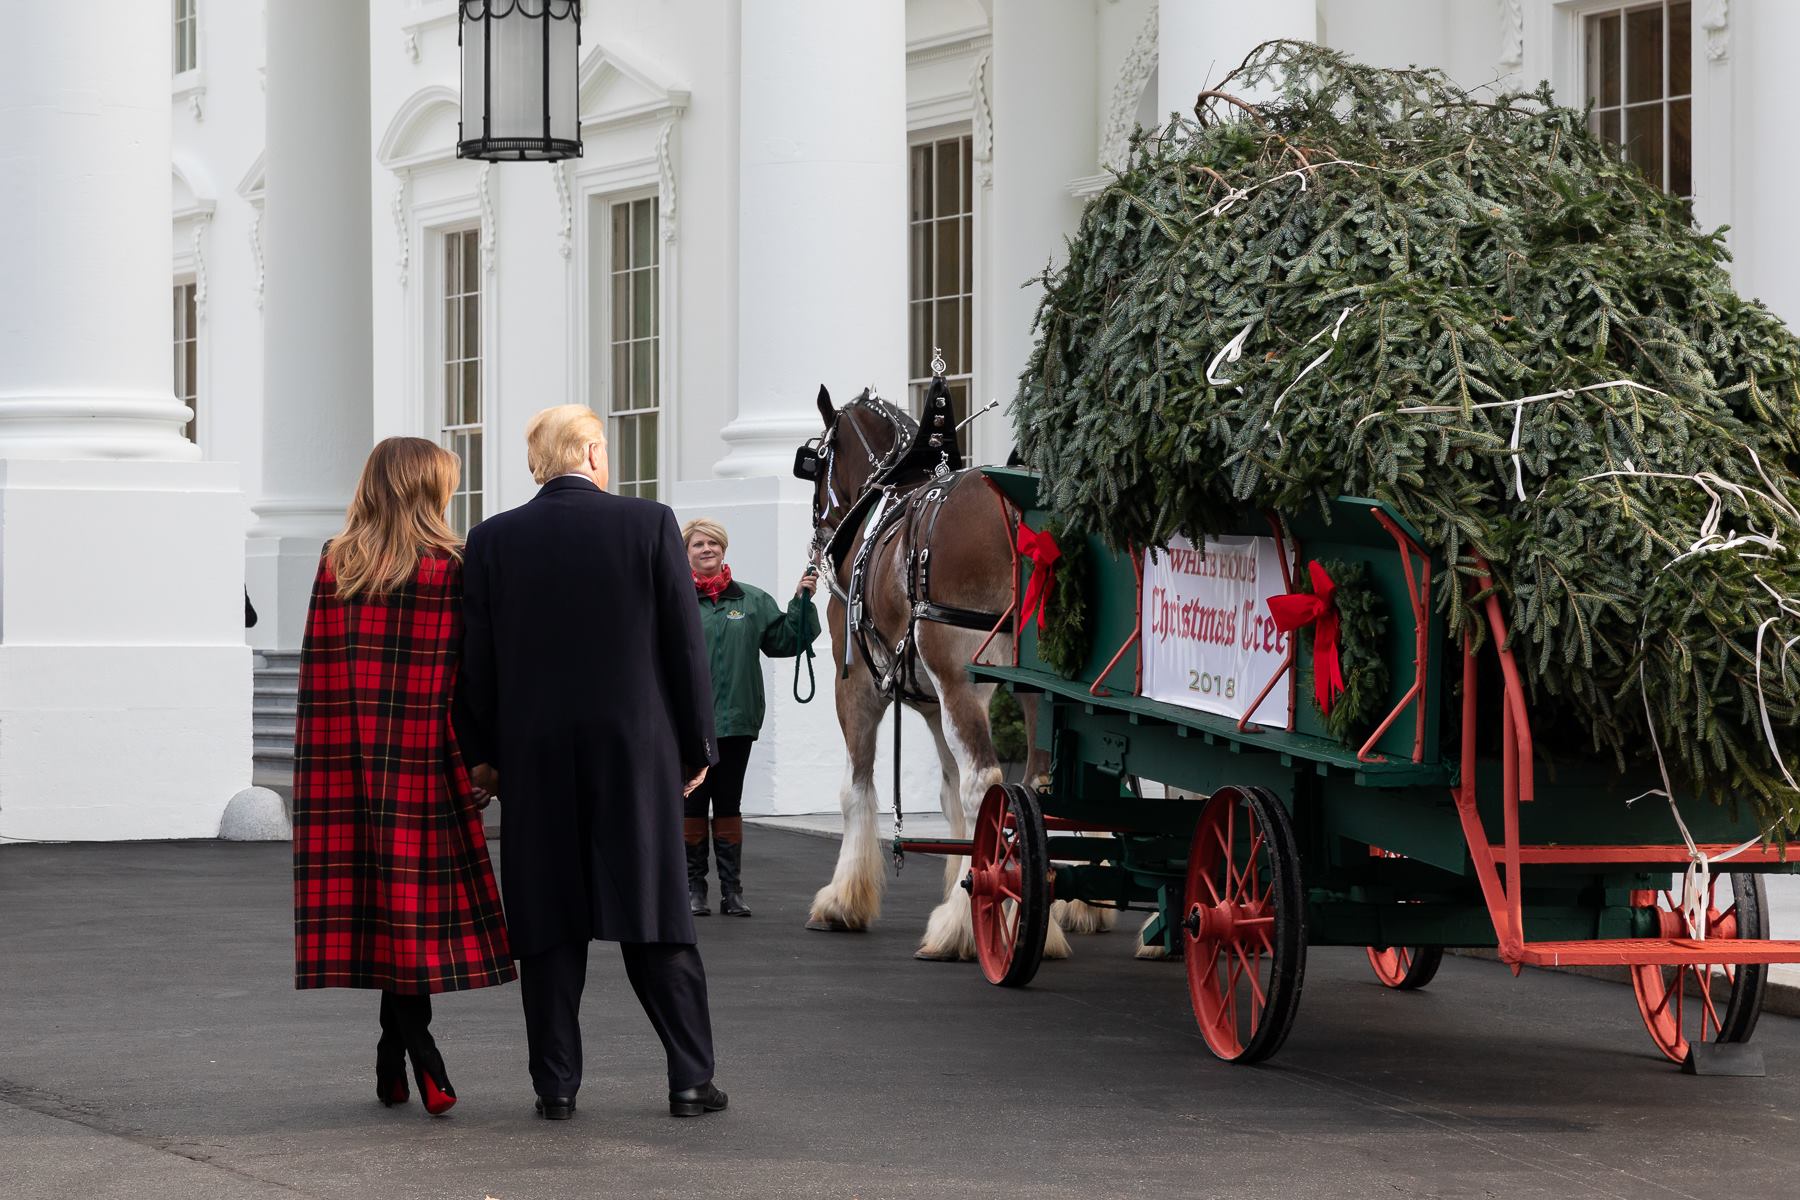 Donald y Melania Trump observando el árbol de navidad de la casa blanca, recién talado. Foto: The White House